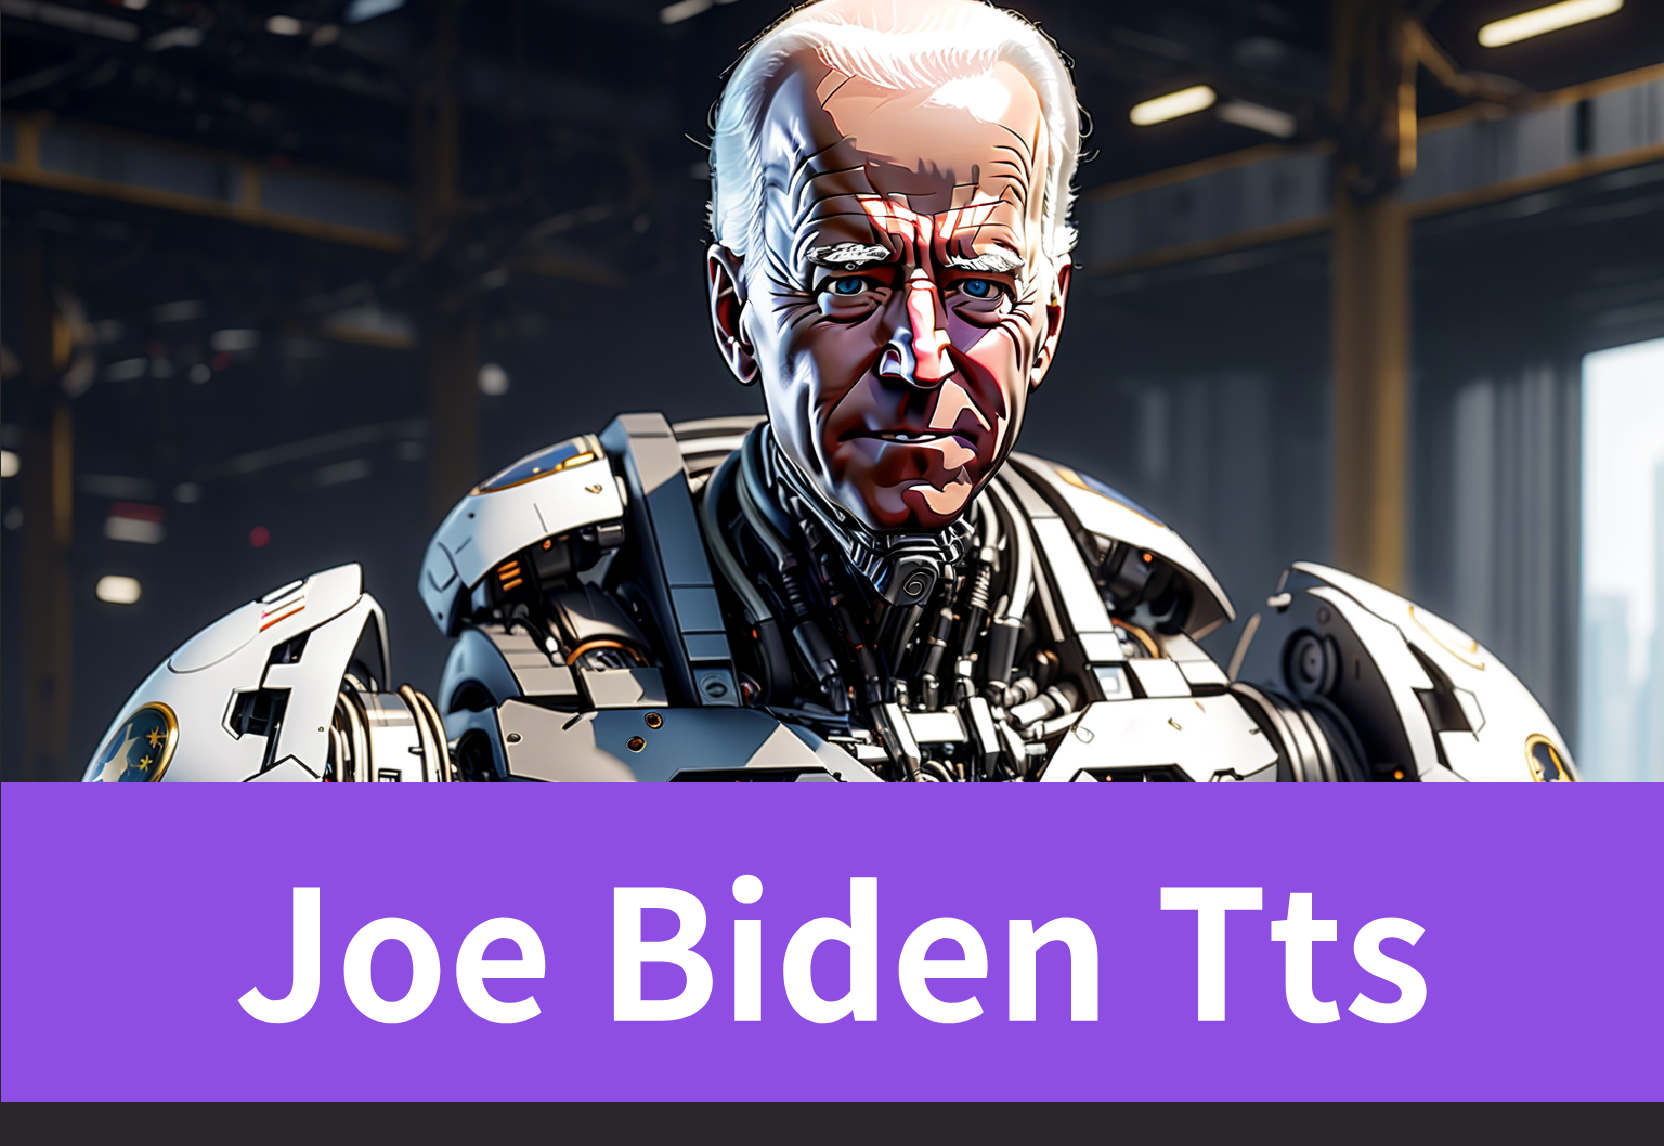 Joe Biden TTS: Transform Text to Speech Instantly